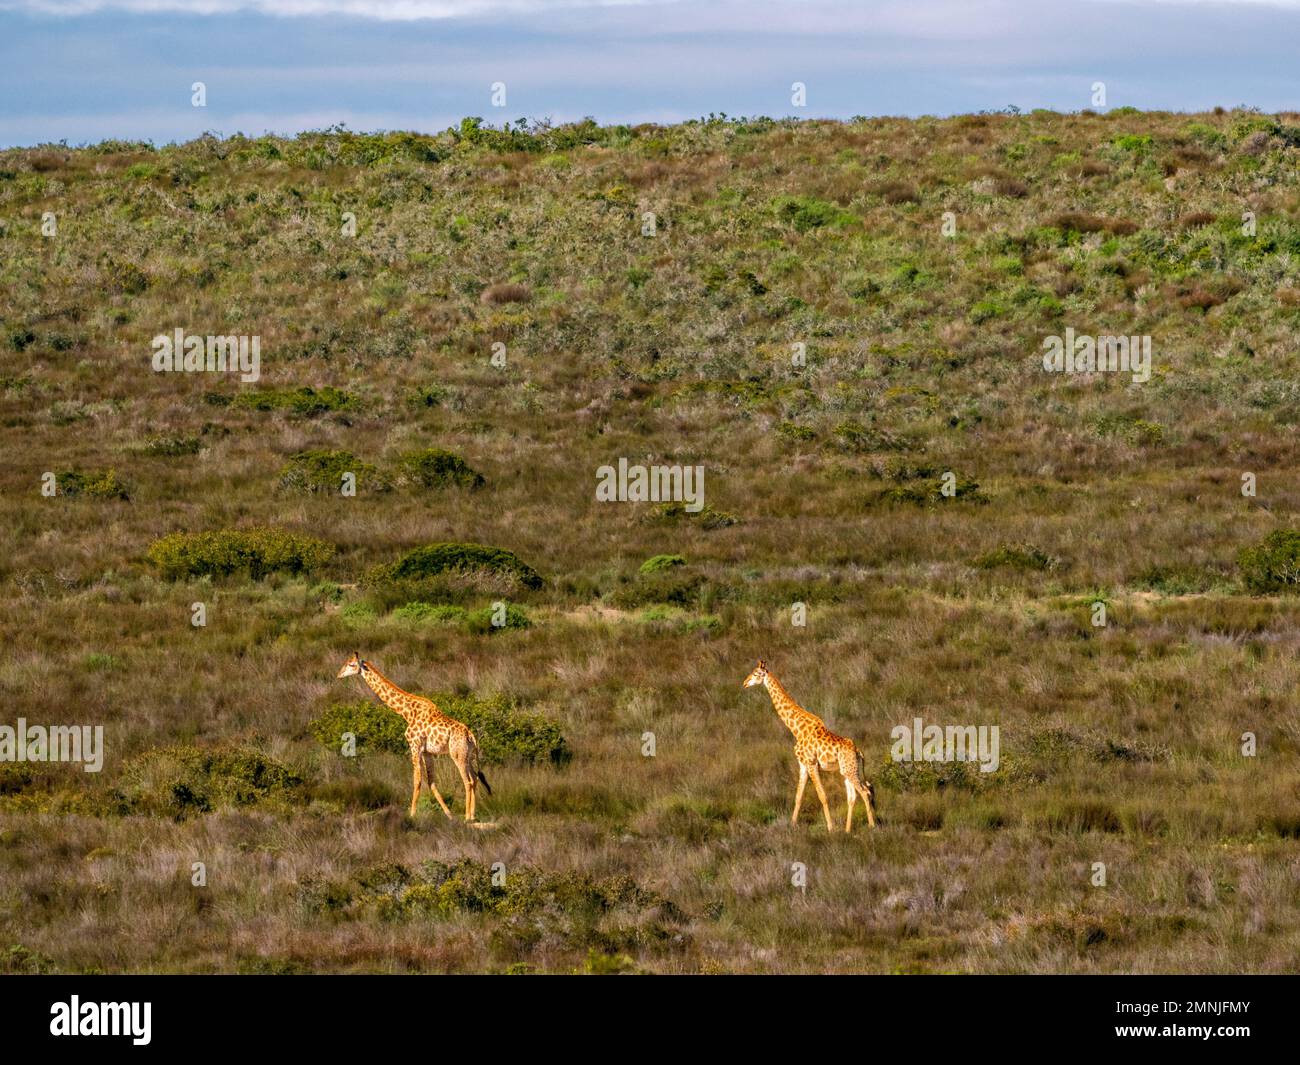 Afrique du Sud, Cap occidental, deux girafes marchant dans les prairies Banque D'Images